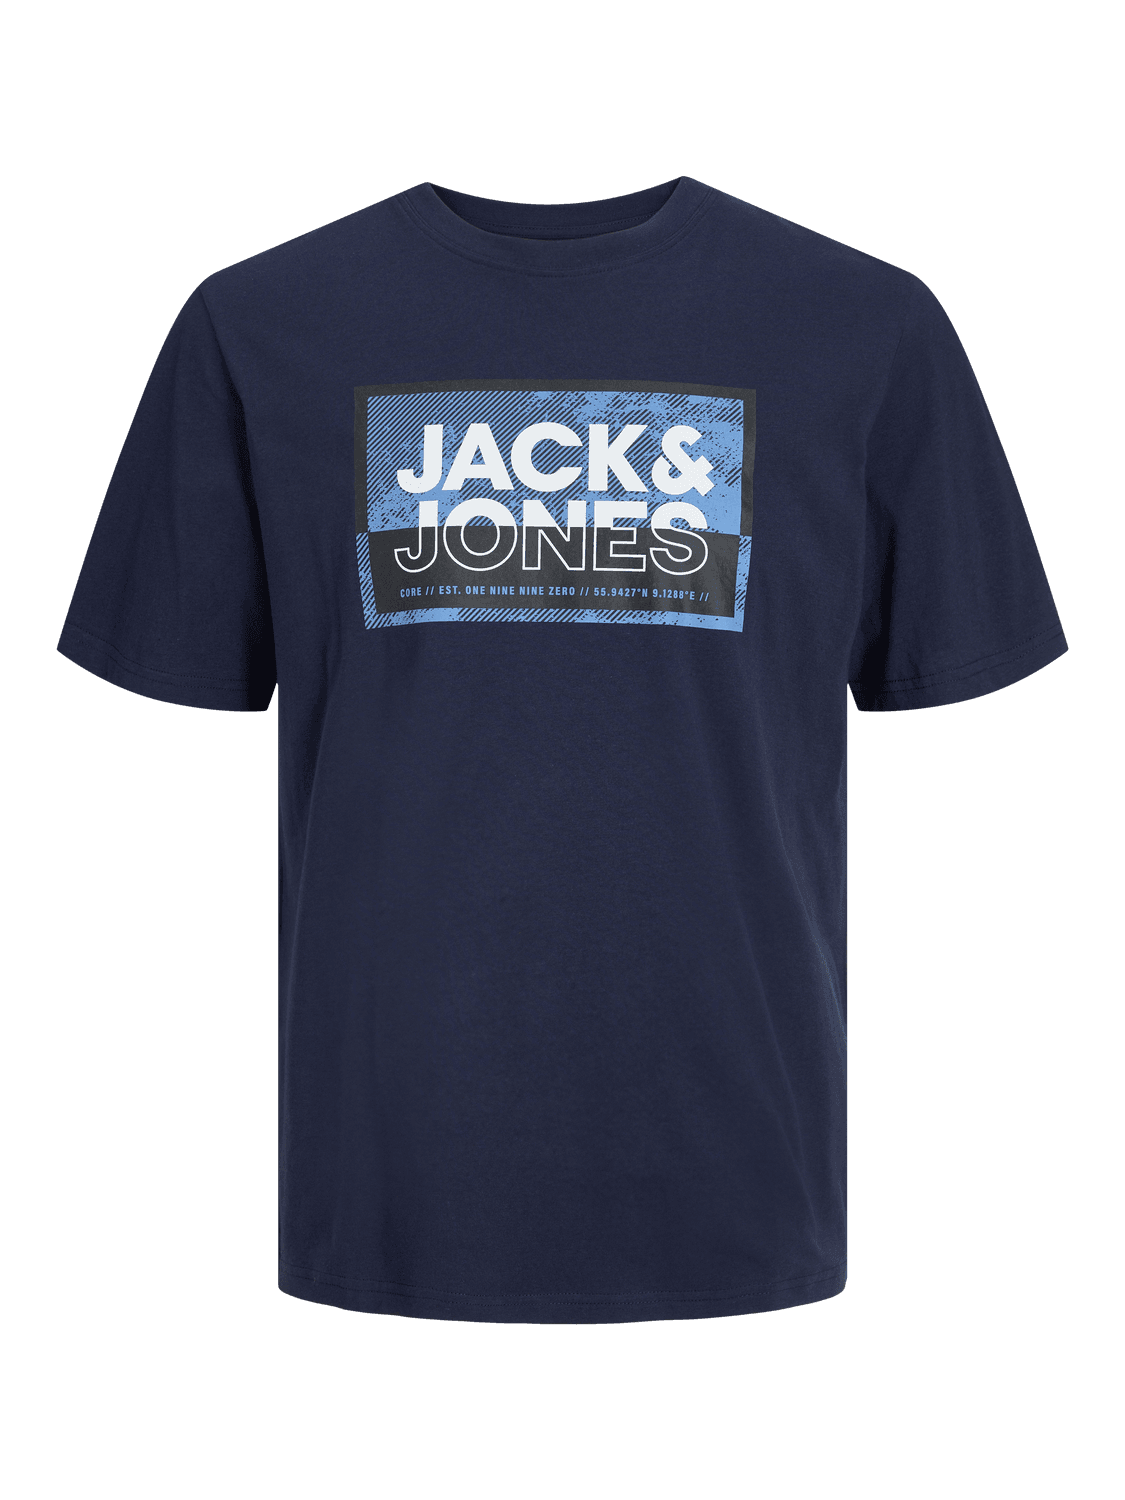 JACK & JONES Muška majica 12253442, Teget